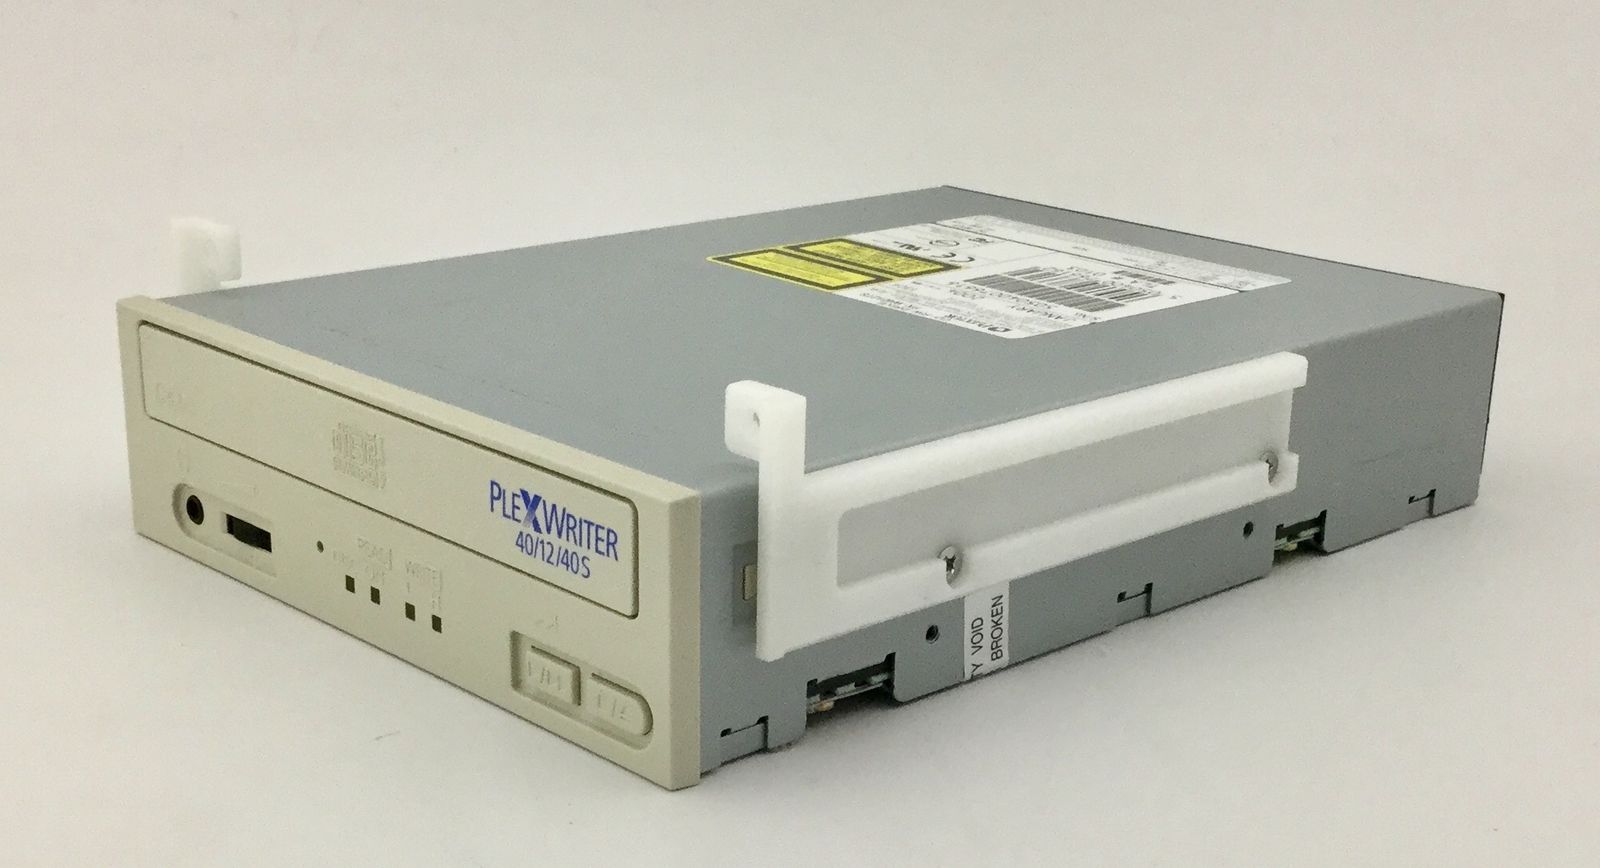 Toshiba SSA-770A Ultrasound PX-W4012TS Plextor CD-RW Drive DIAGNOSTIC ULTRASOUND MACHINES FOR SALE